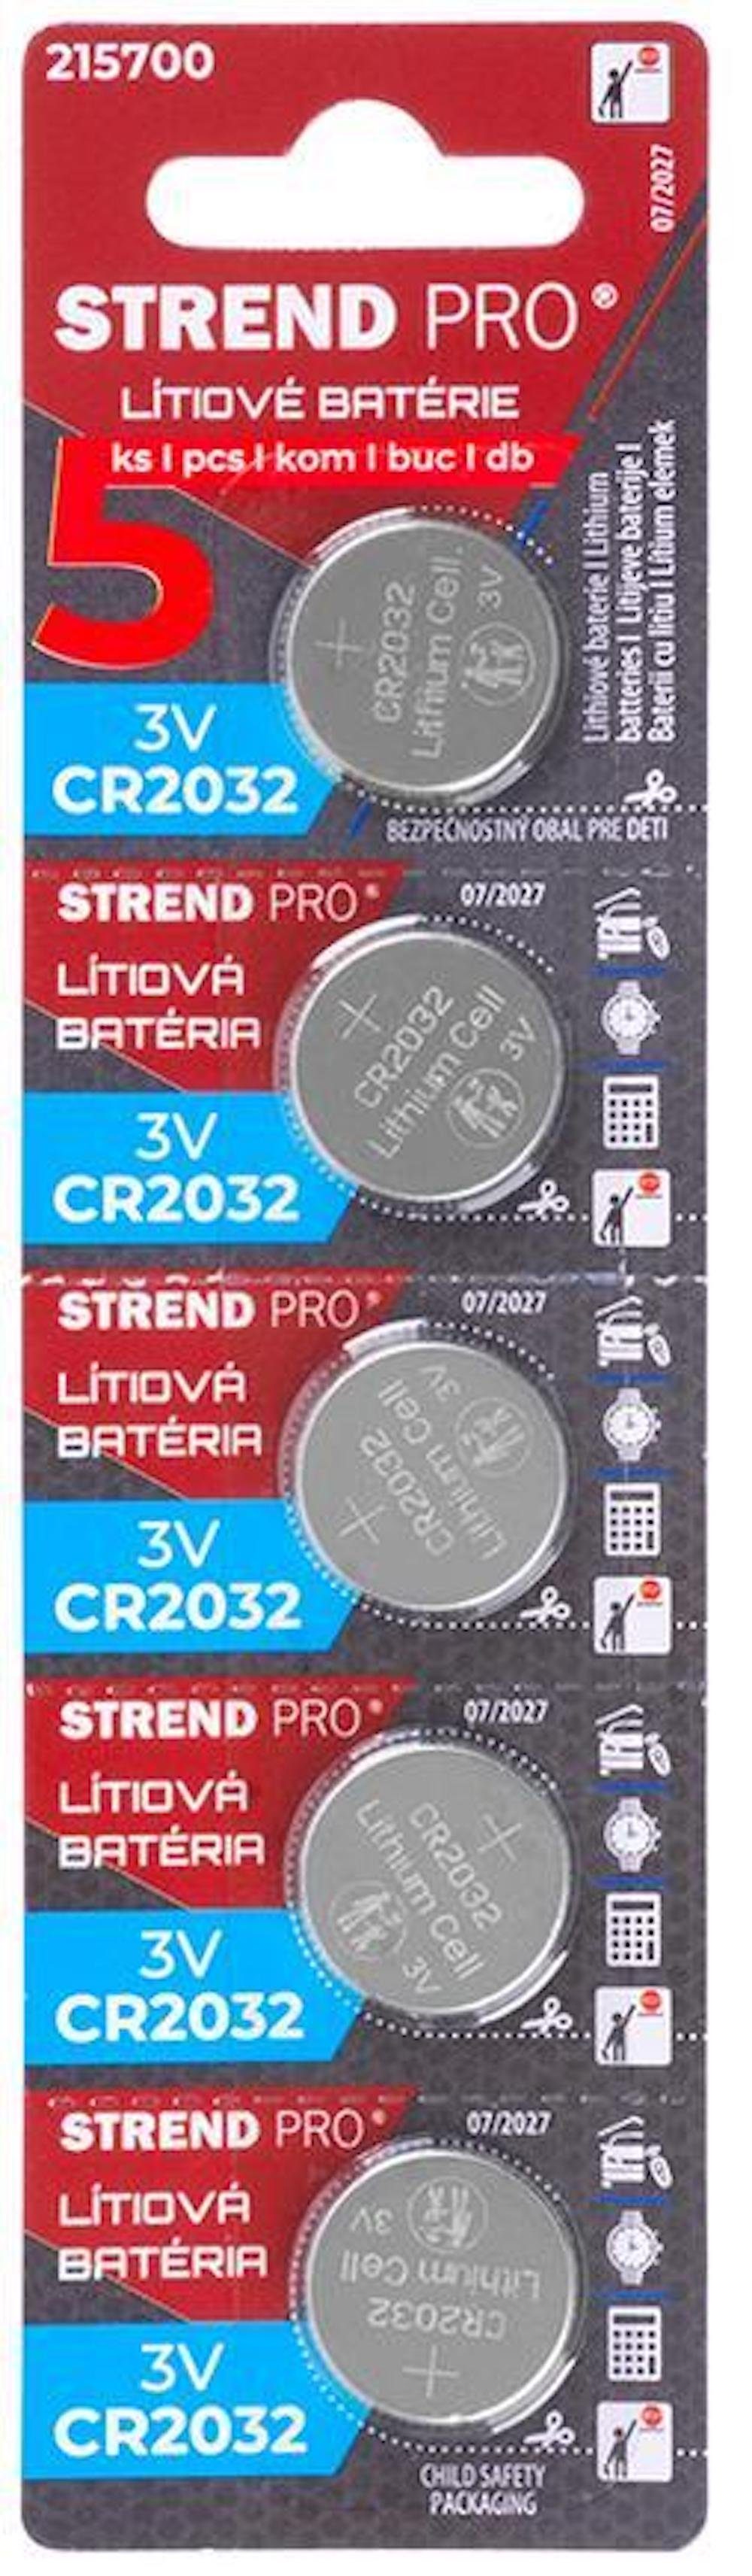 PROREGAL® Elektrowerkzeug-Set Batterien, Li-Mno2, 5 Stück, CR2032